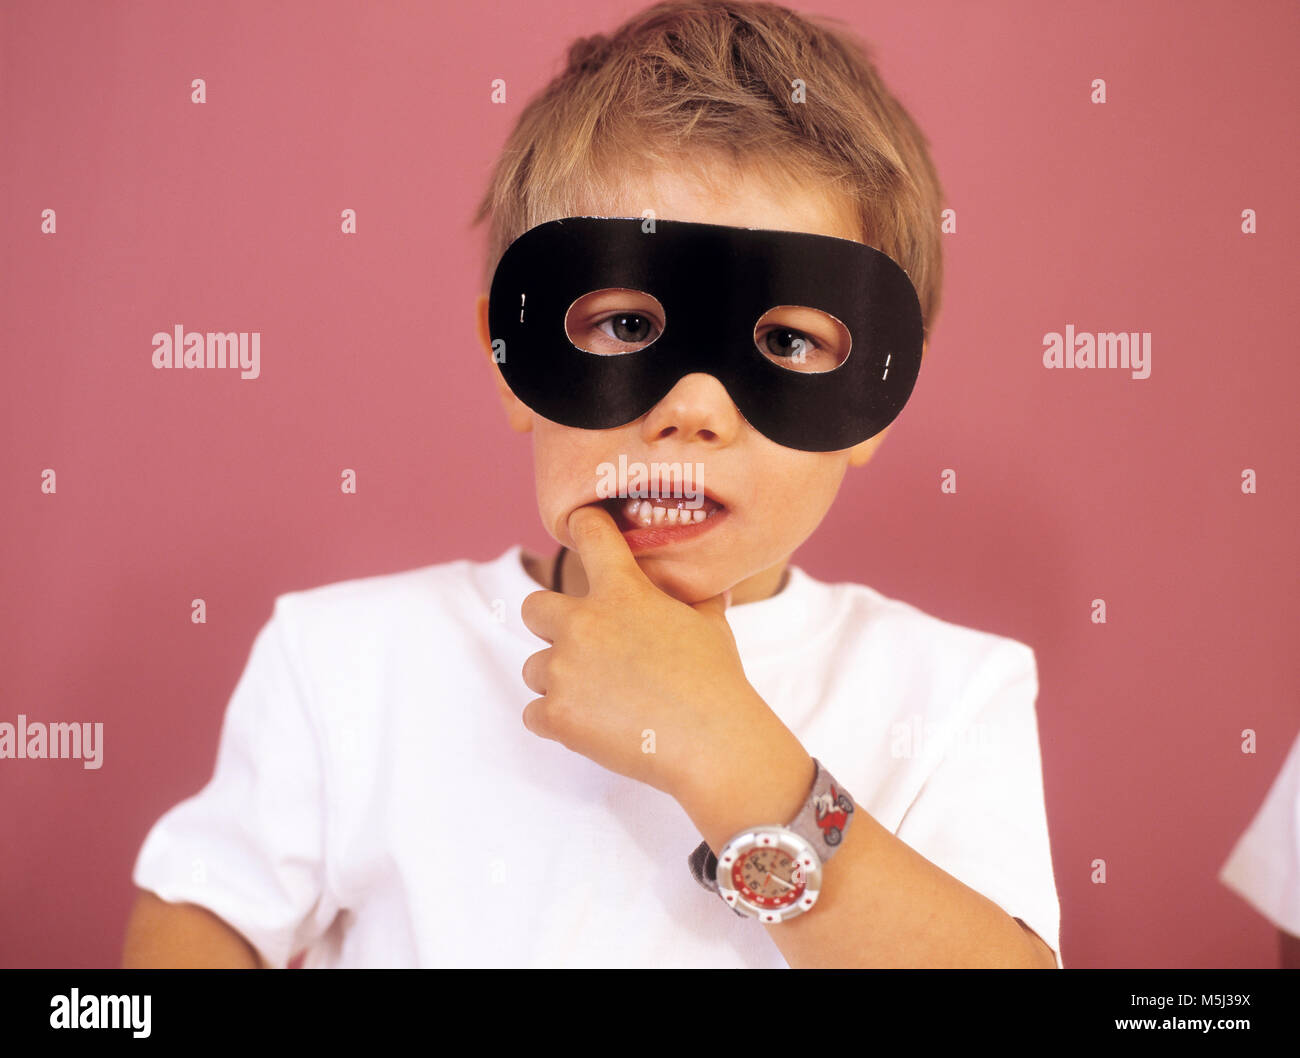 Portrait of little boy wearing black eye mask Stock Photo